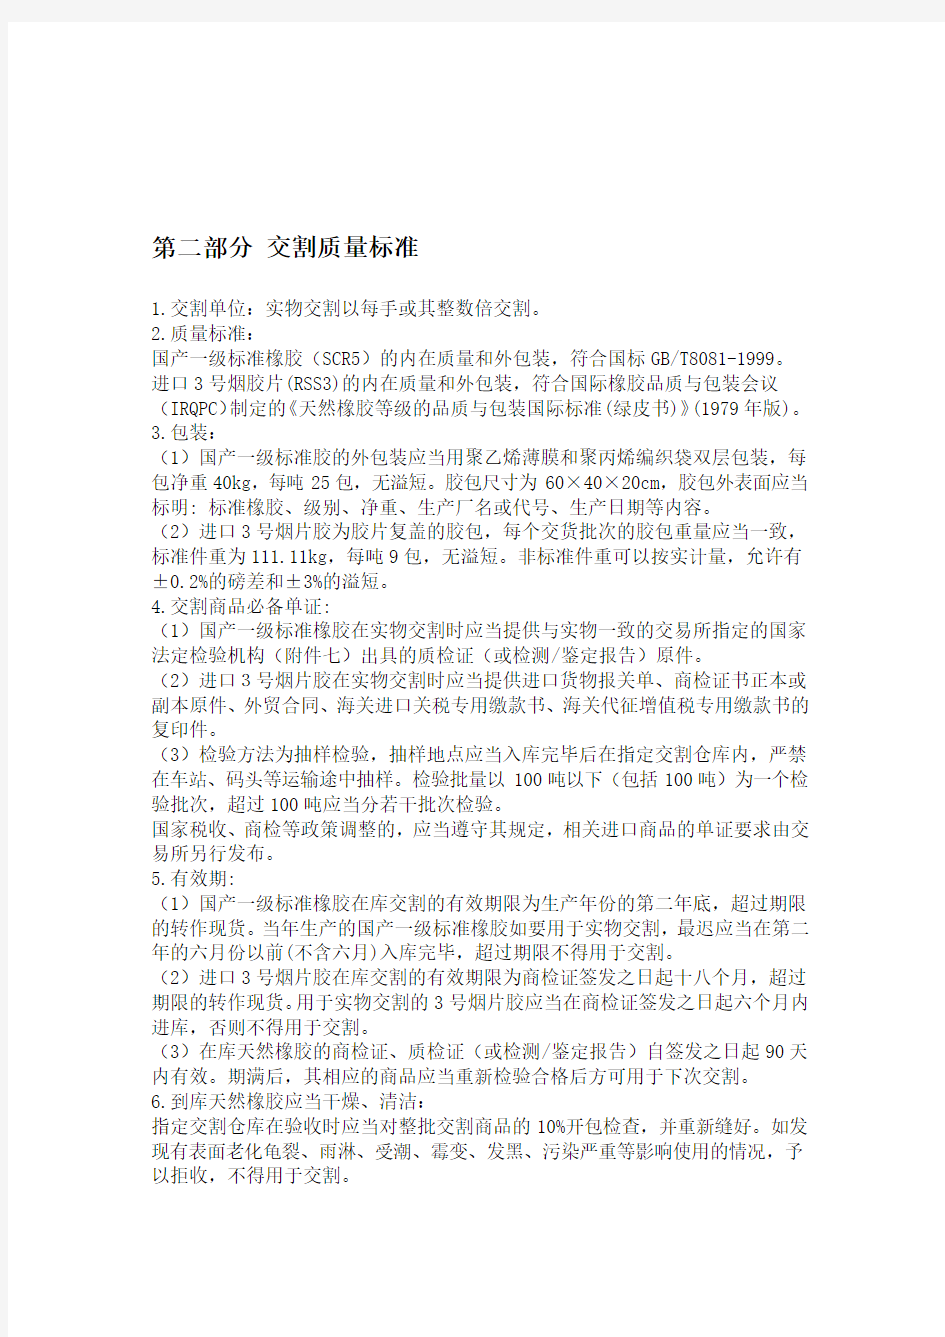 上海期货交易所天然橡胶期货合约资料整理